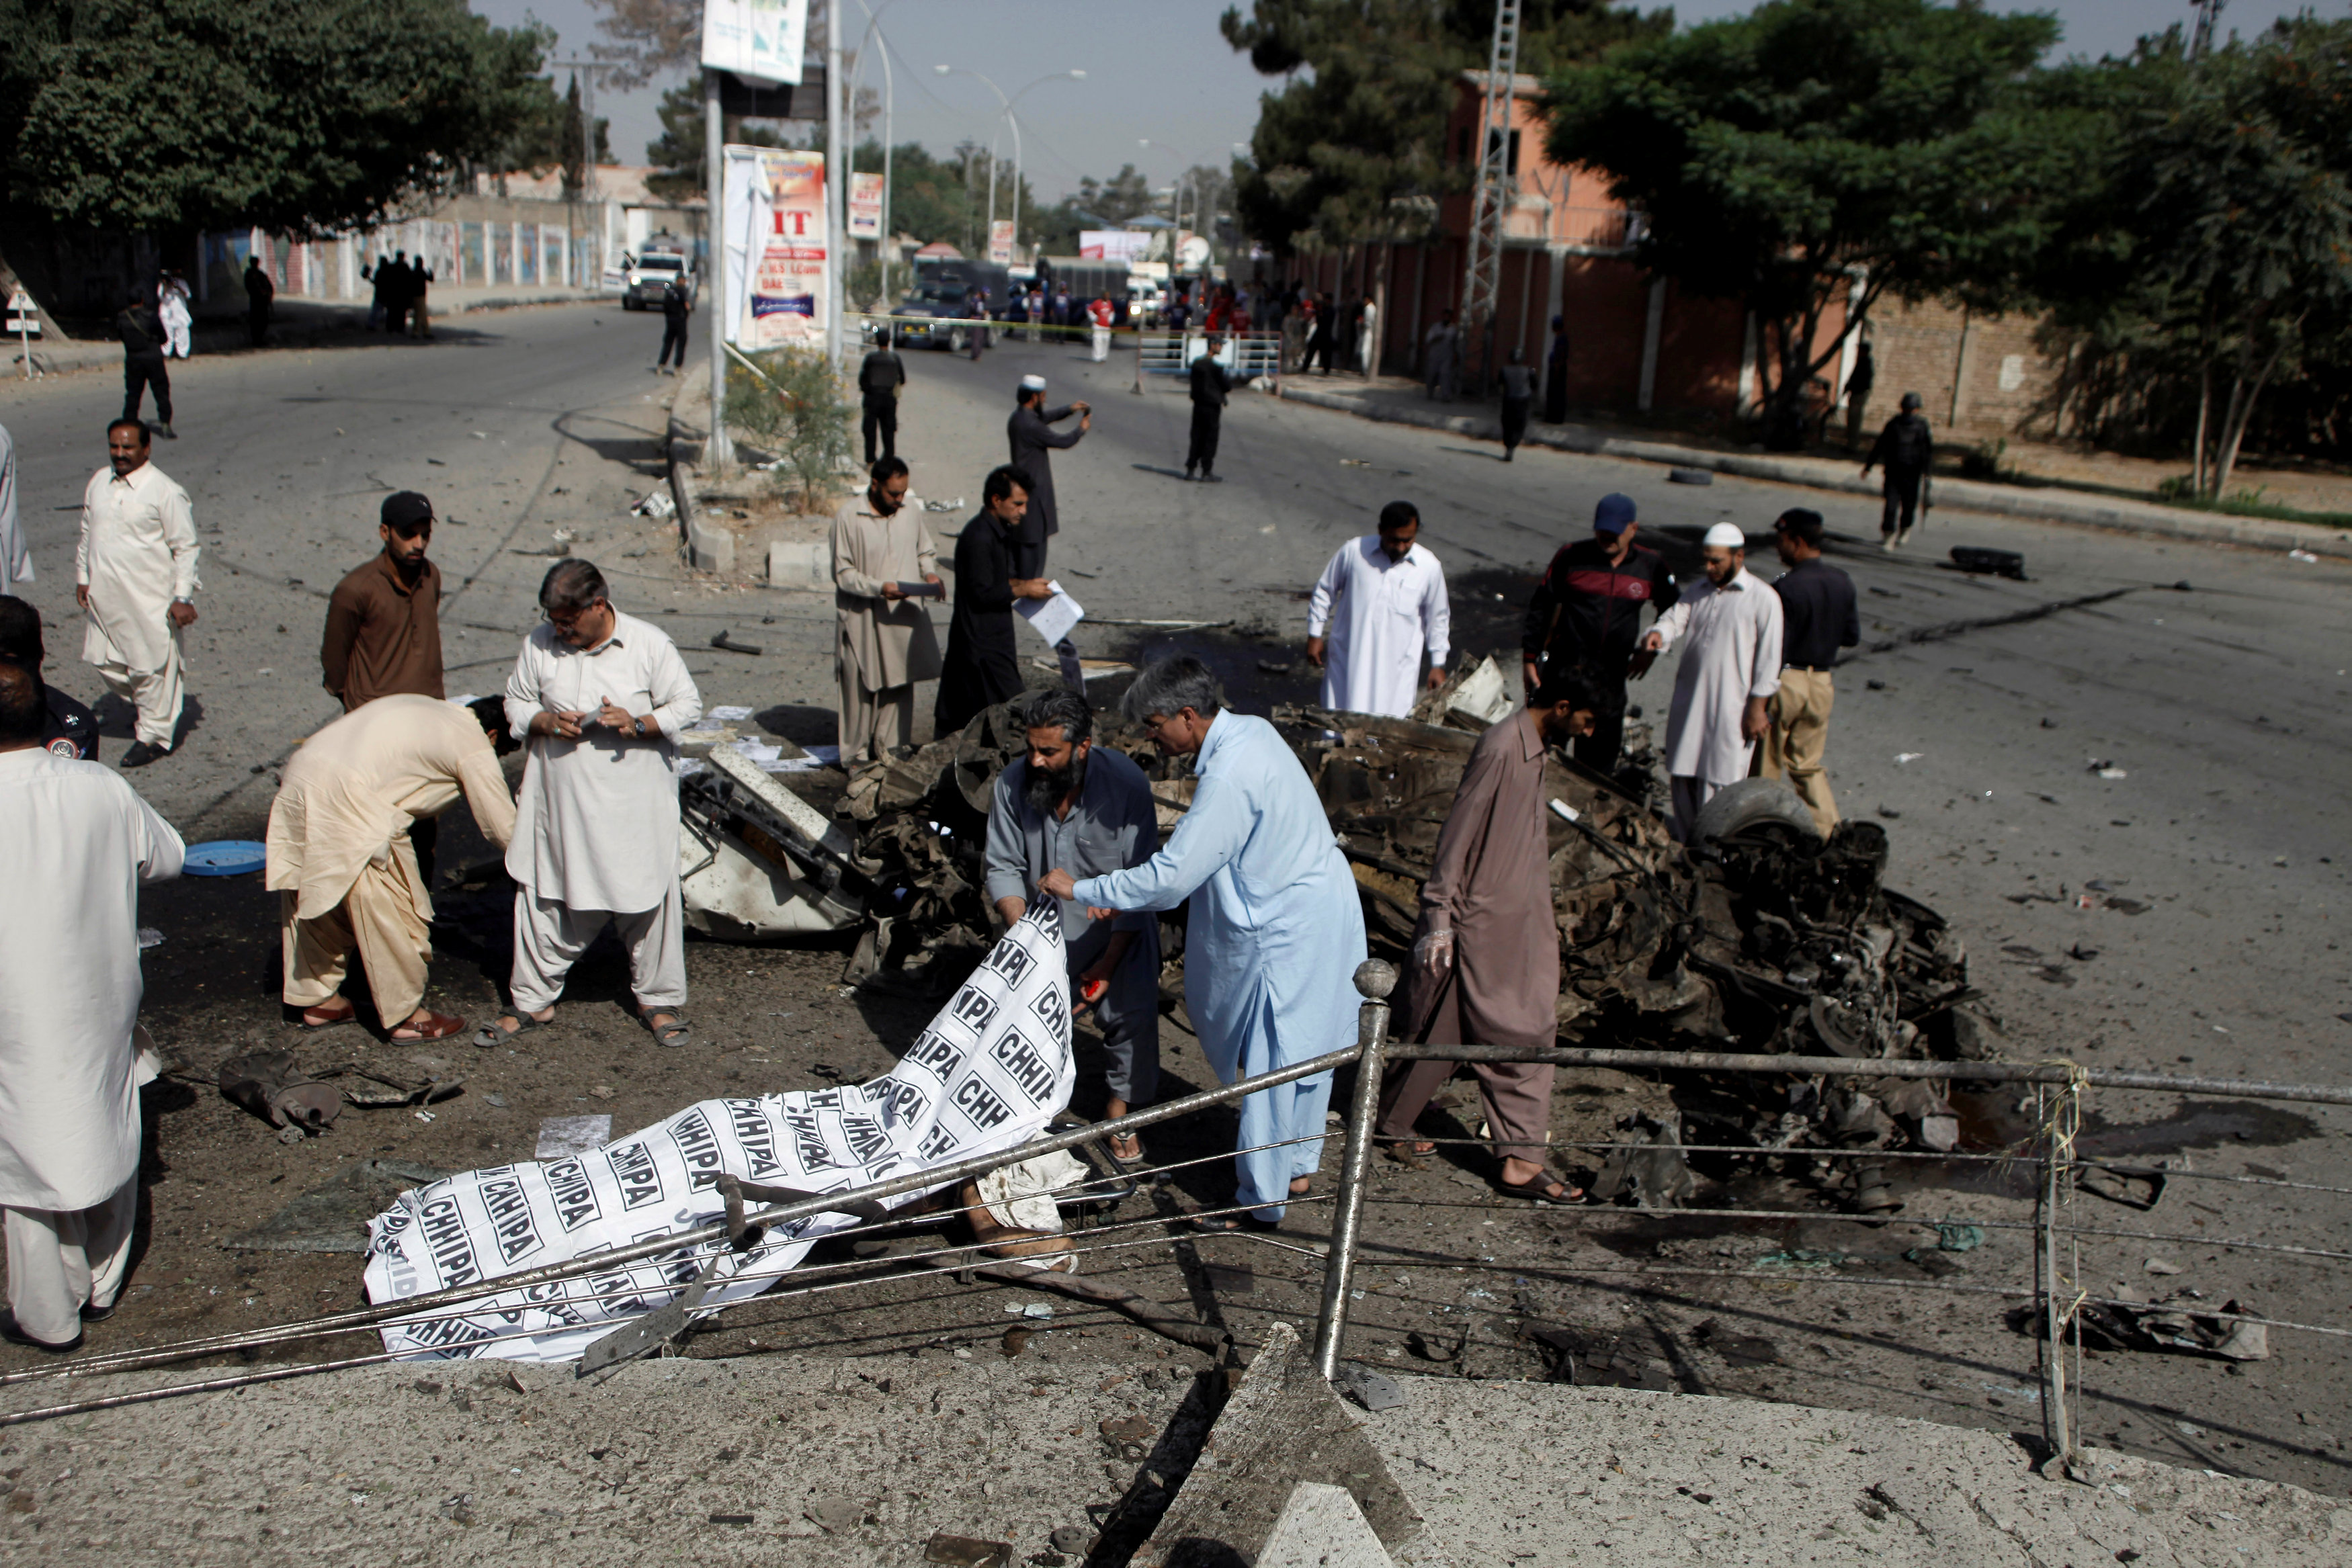 Al menos 9 muertos y 18 heridos en atentado al oeste de Pakistán